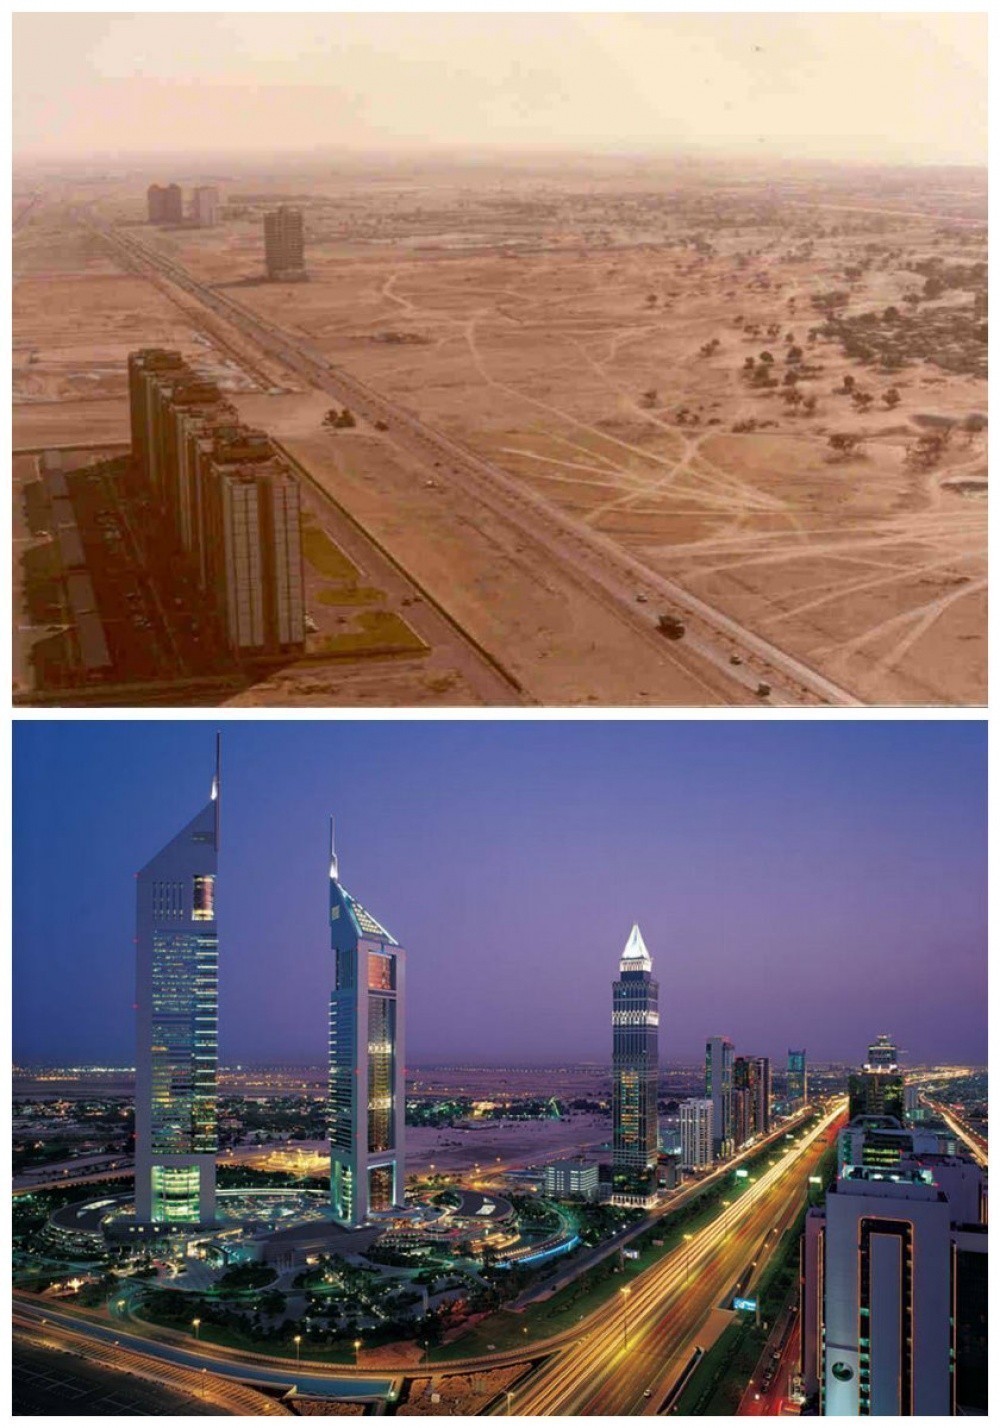 Ντουμπάι, Ηνωμένα Αραβικά Εμιράτα: Το 1990 και Σήμερα